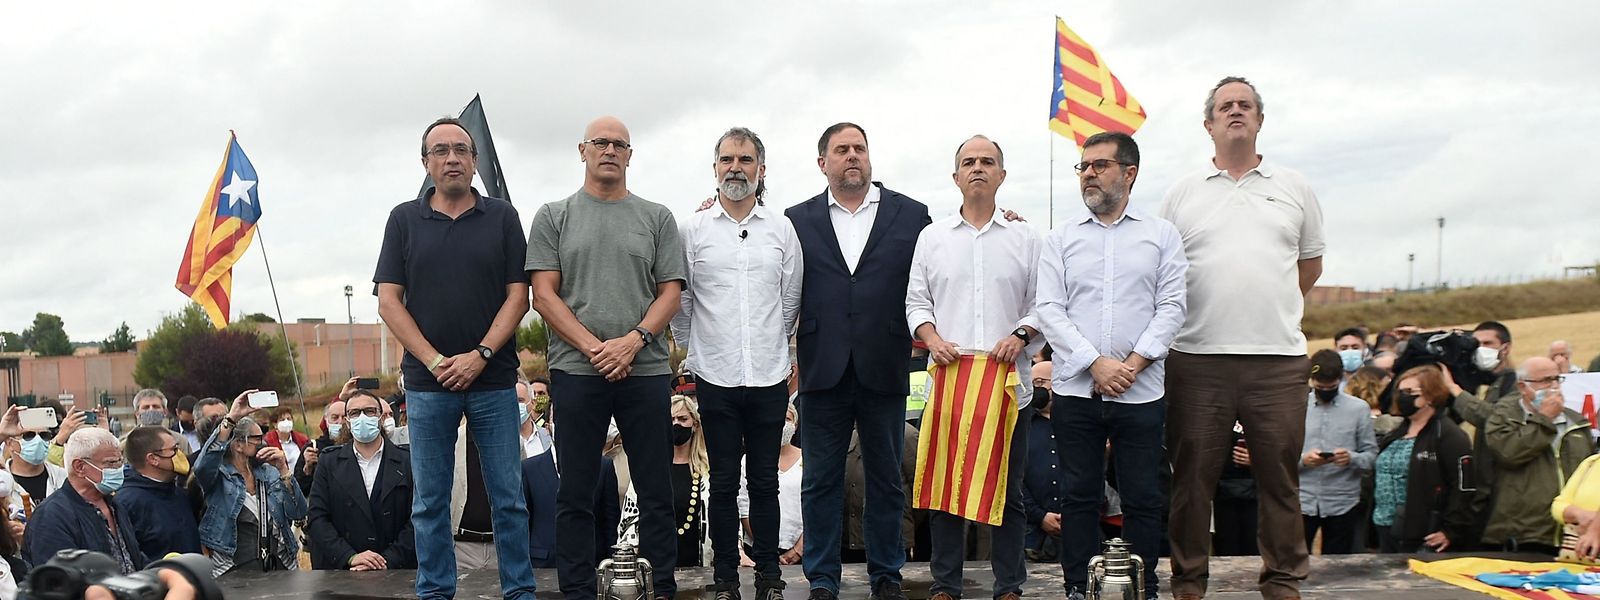 Die katalanischen Separatisten Josep Rull, Raul Romeva, Jordi Cuixart, Oriol Junqueras, Jordi Turull, Jordi Sànchez und Joaquim Forn werden nach ihrer Entlassung gefeiert.